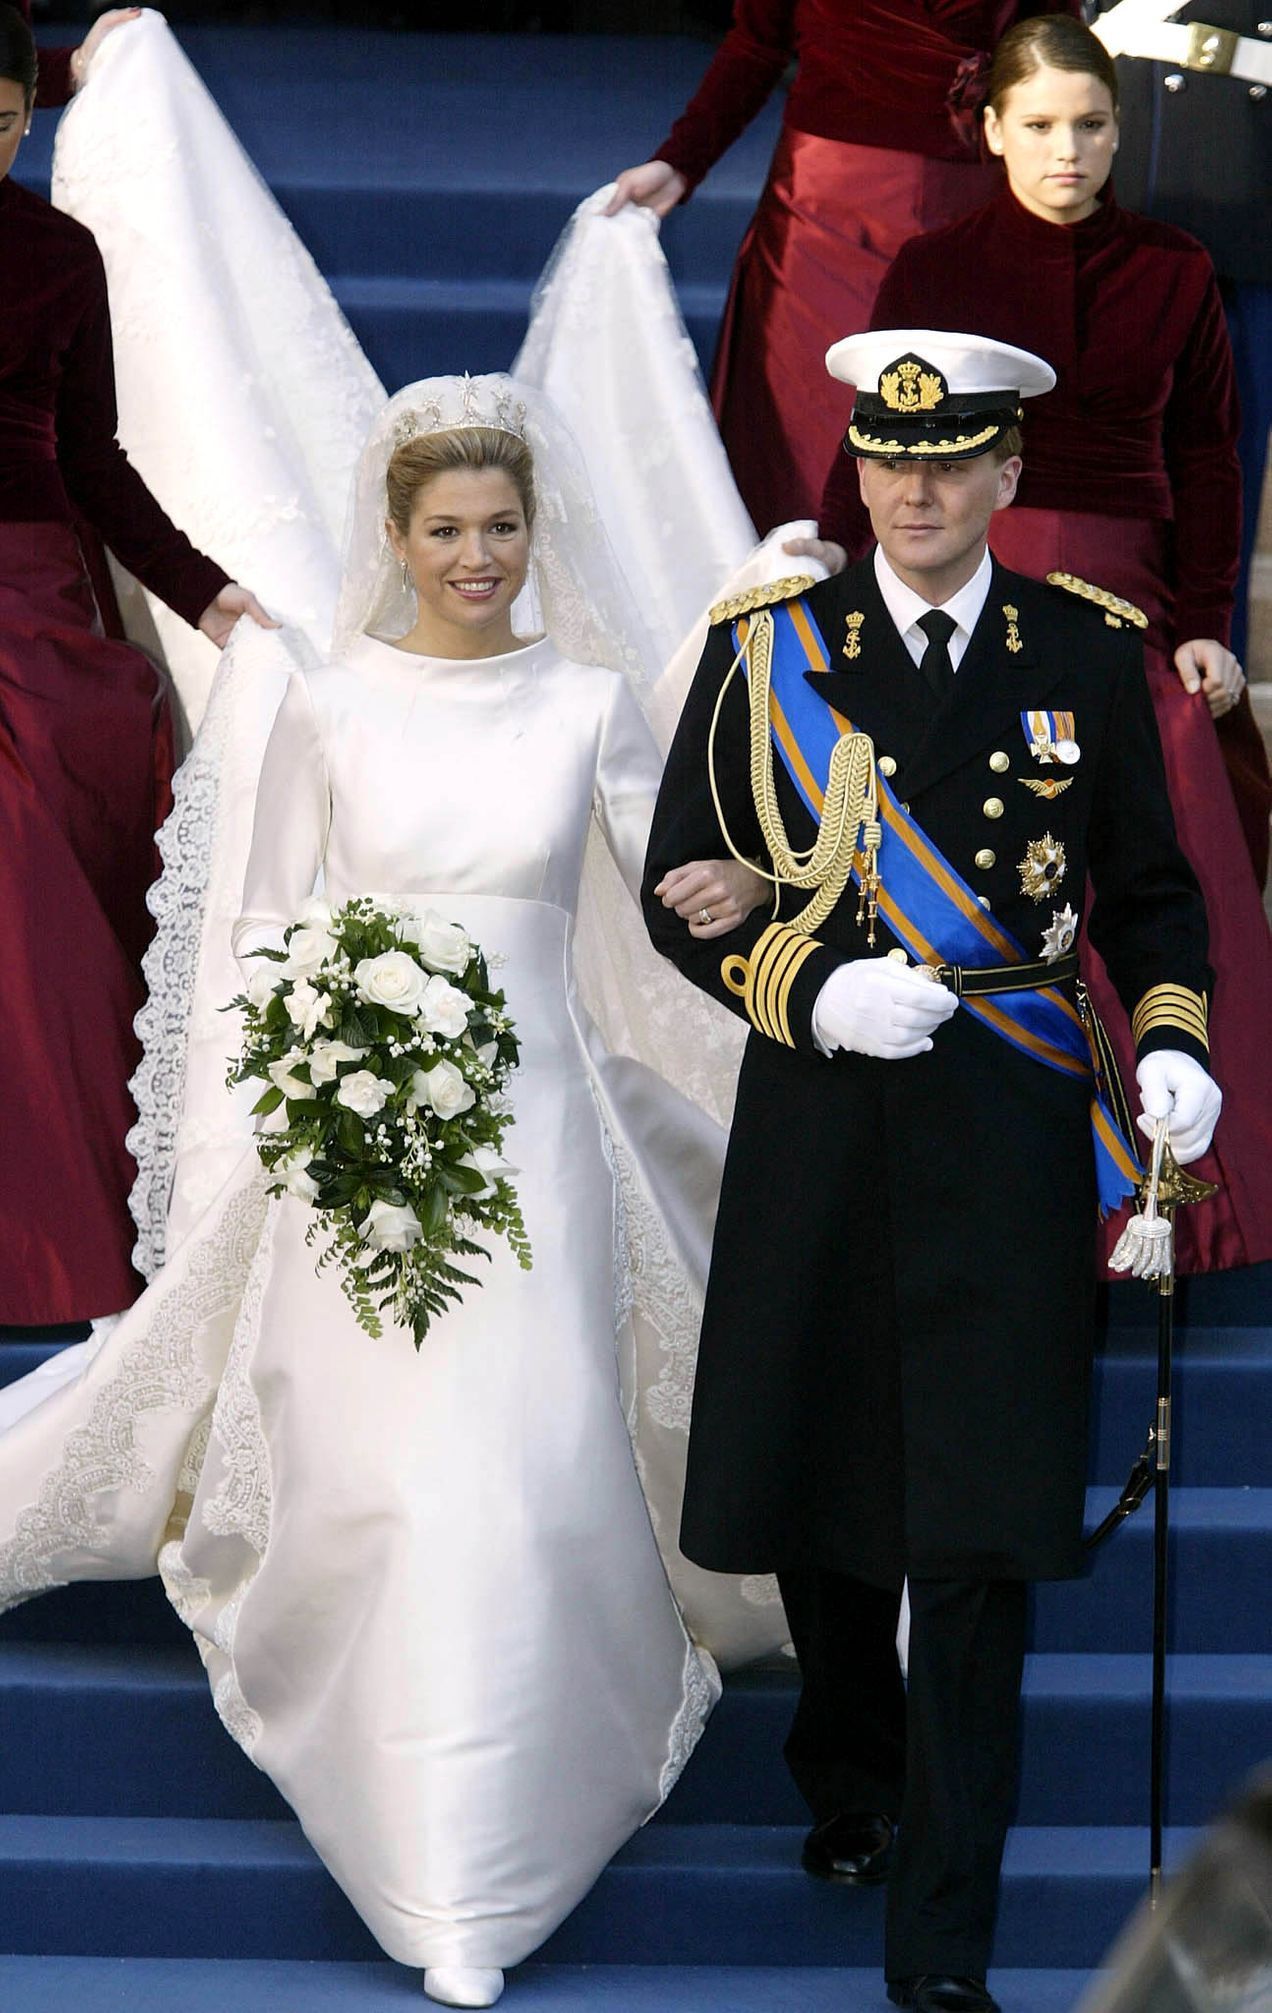 FOTOGALERIE / Magazín / Novomanželé Maxima Zorreguietová  a holandský korunní princ Willem-Alexander.